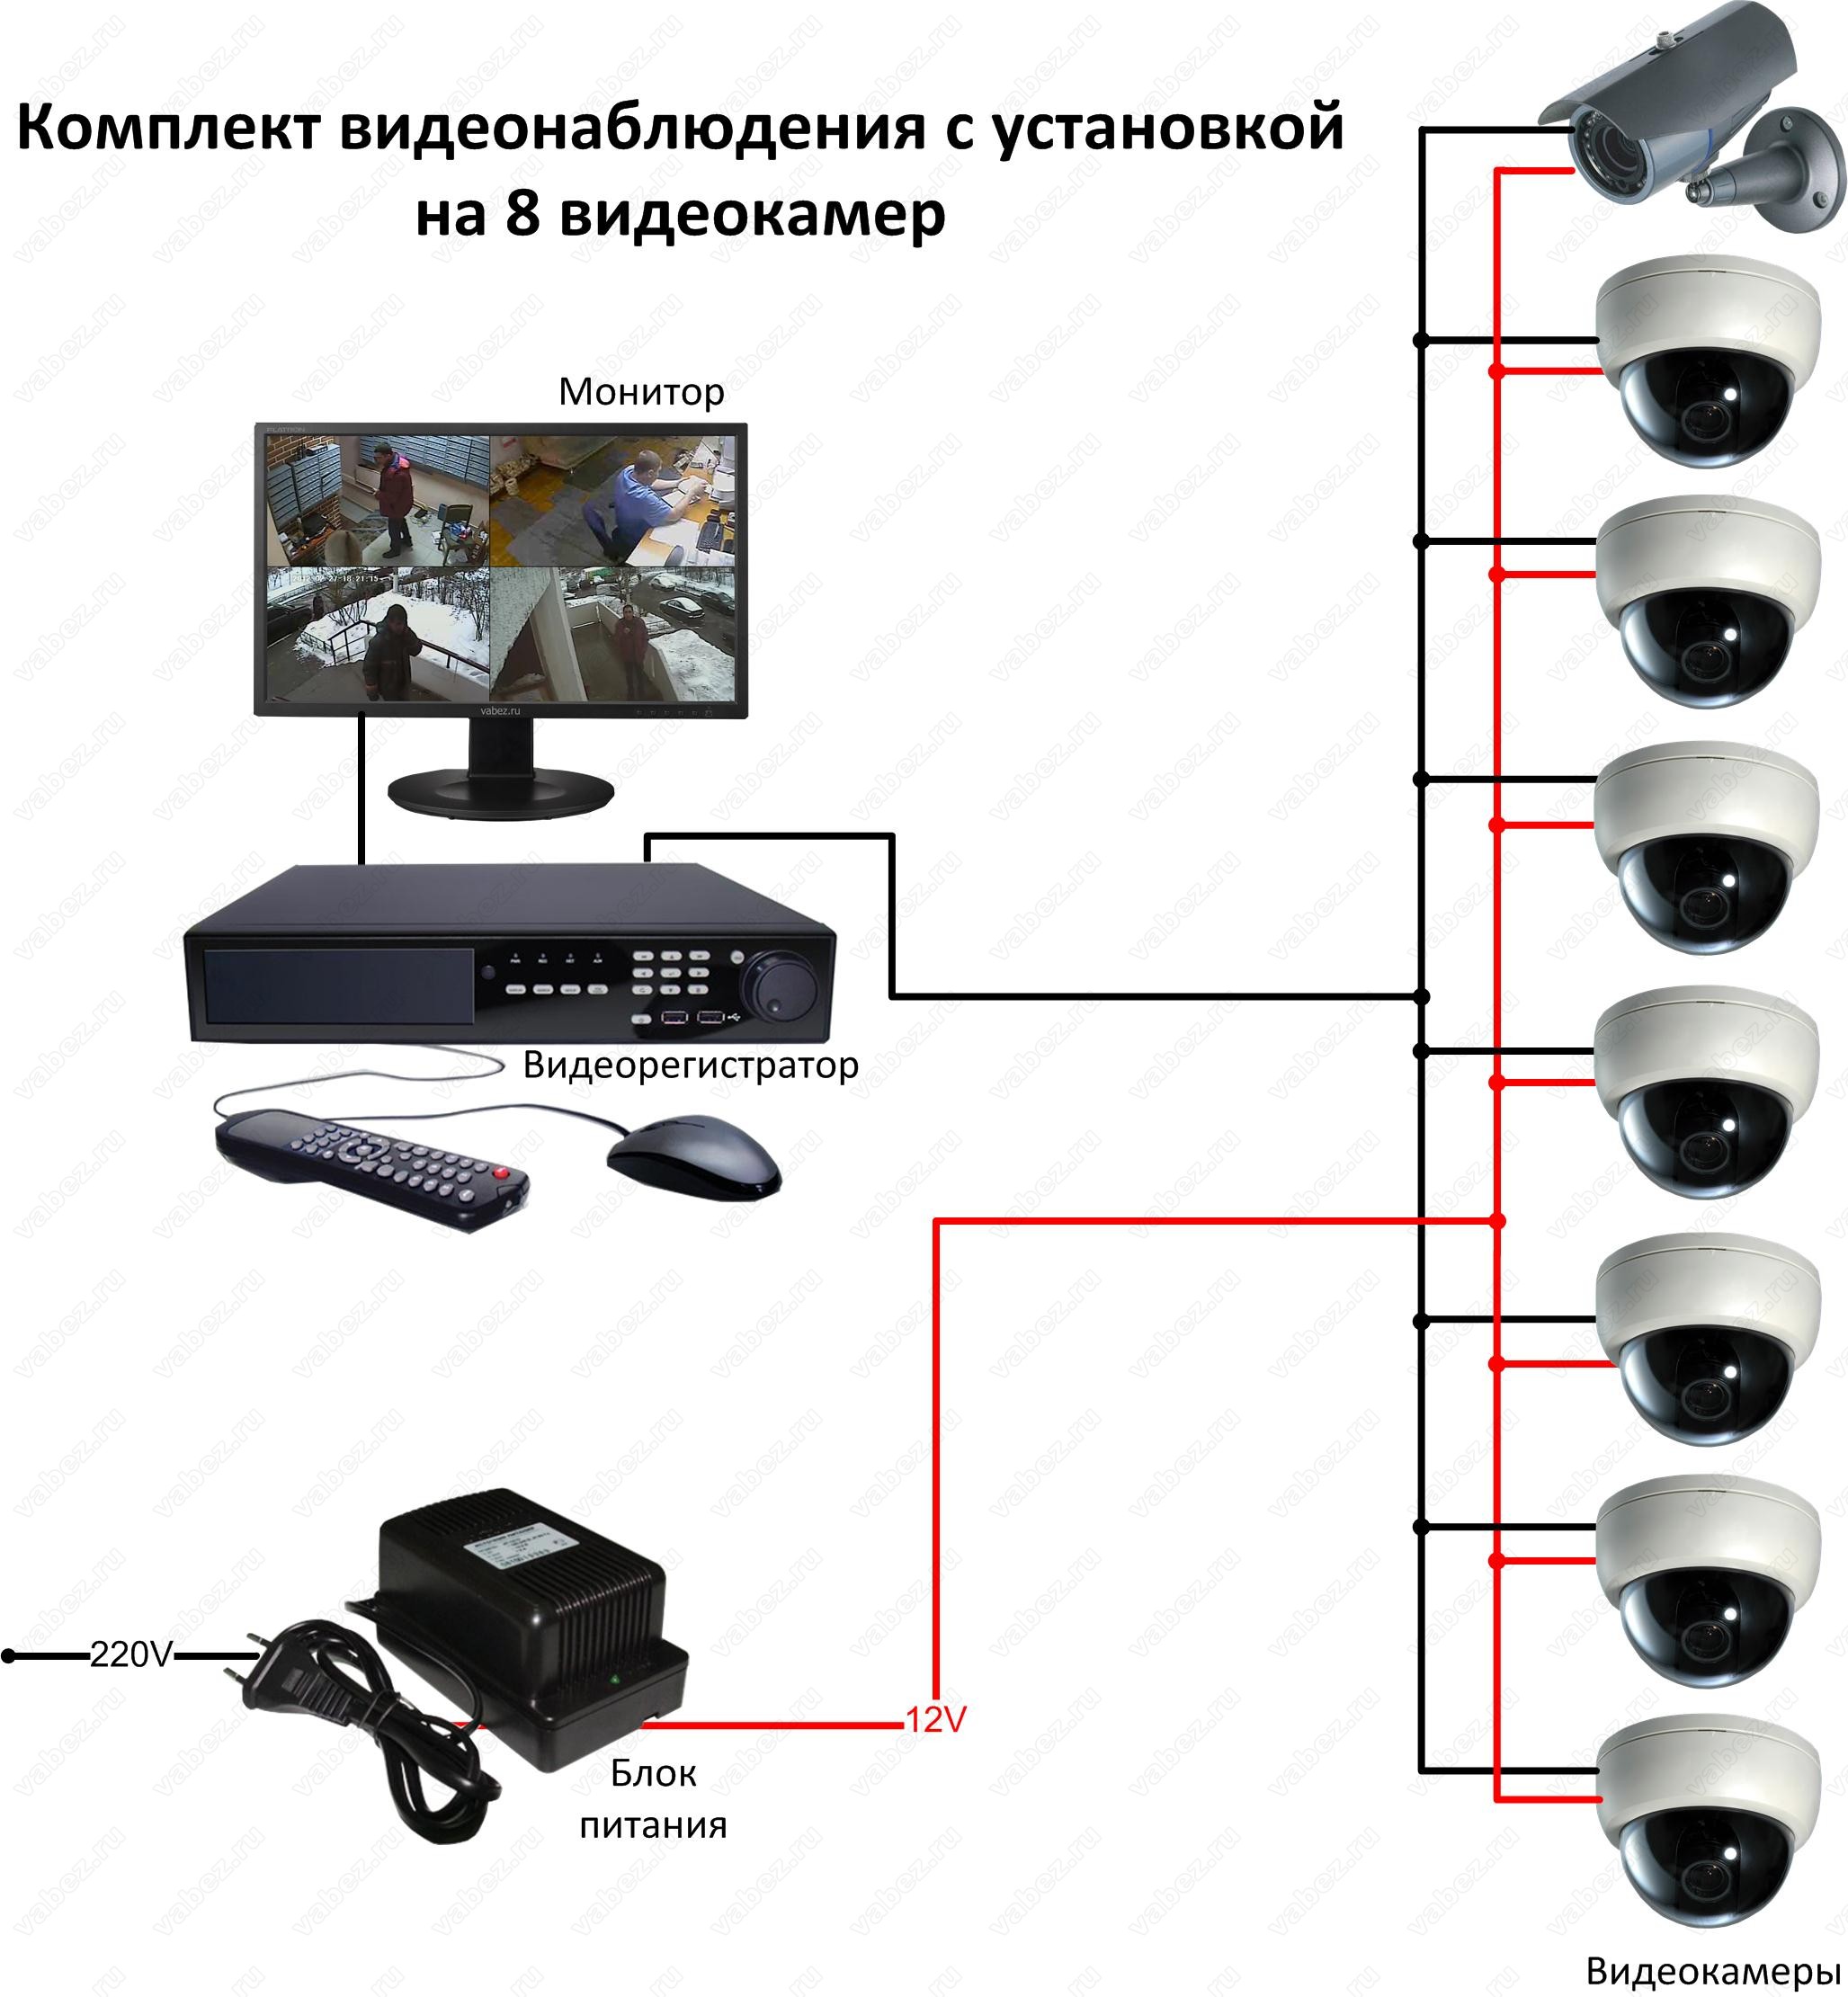 Как можно установить камеру. Схема подключения камеры видеонаблюдения схема. Подсоединение камеры видеонаблюдения схема подключения. Схема подсоединения камер видеонаблюдения. Схема подключения видеокамеры наблюдения.